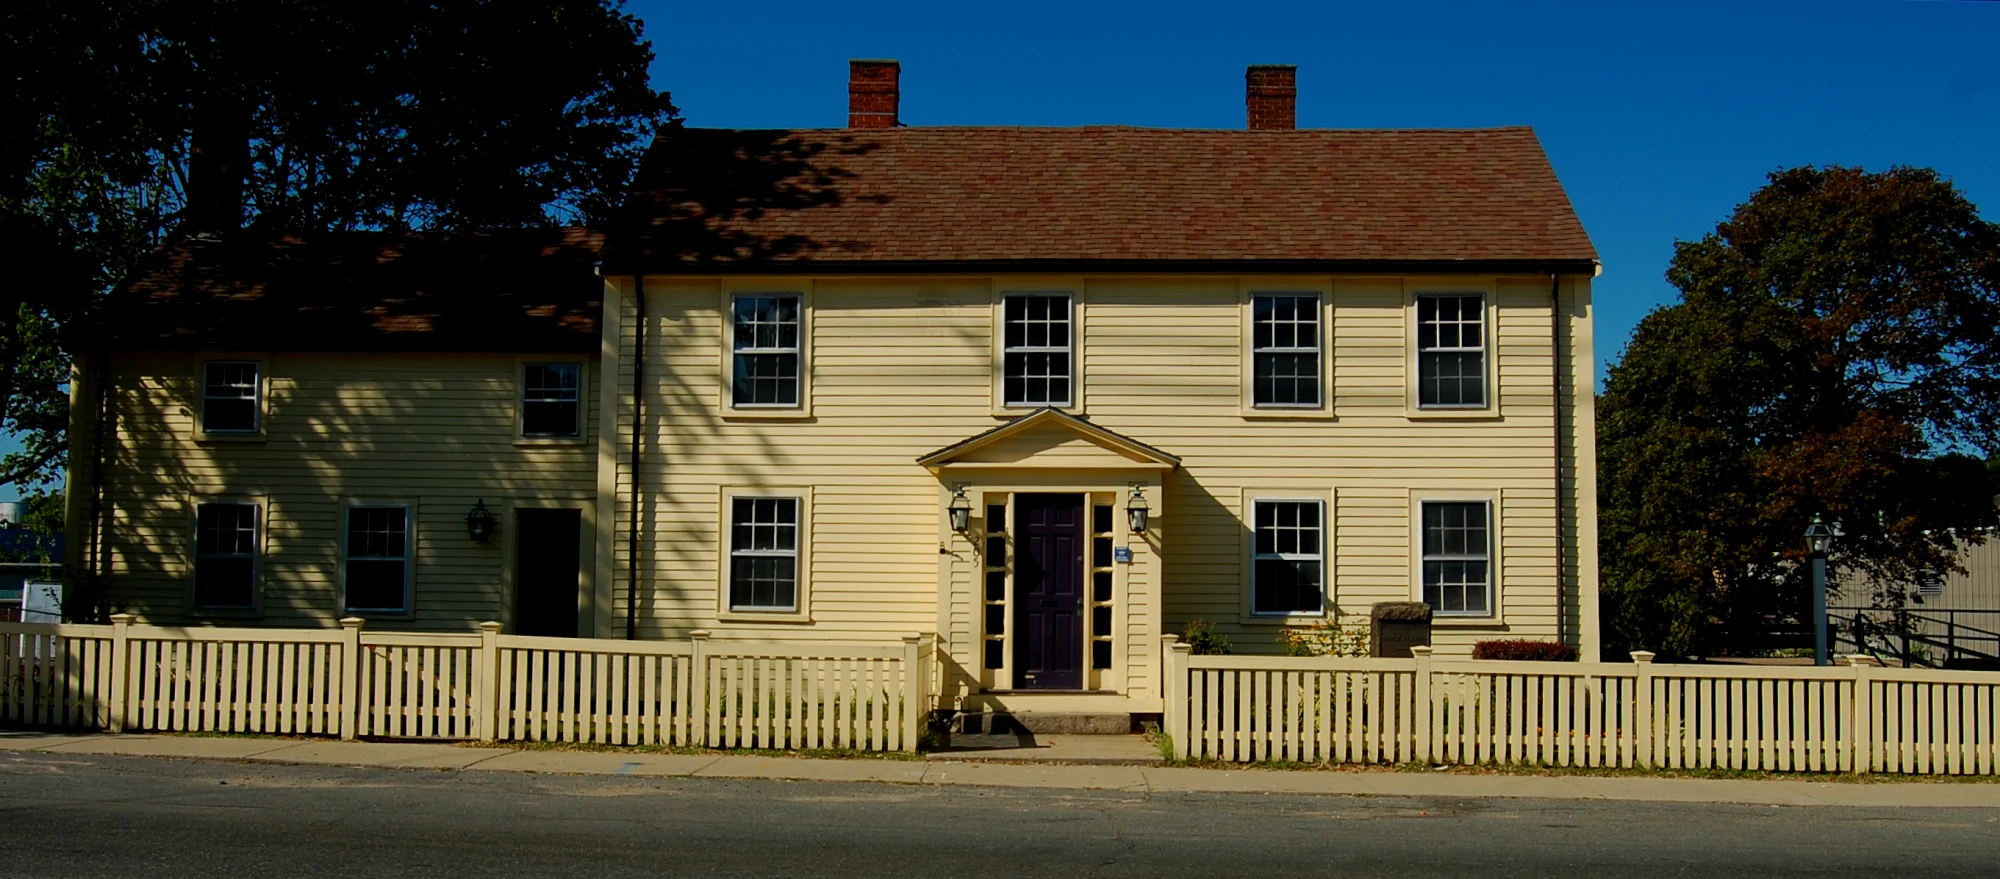 乔治·皮博迪和玛丽·皮博迪的父母分别是托马斯·皮博迪和朱迪思·道奇（Thomas Peabody and Judith Dodge），图中的房子是他的出生地。